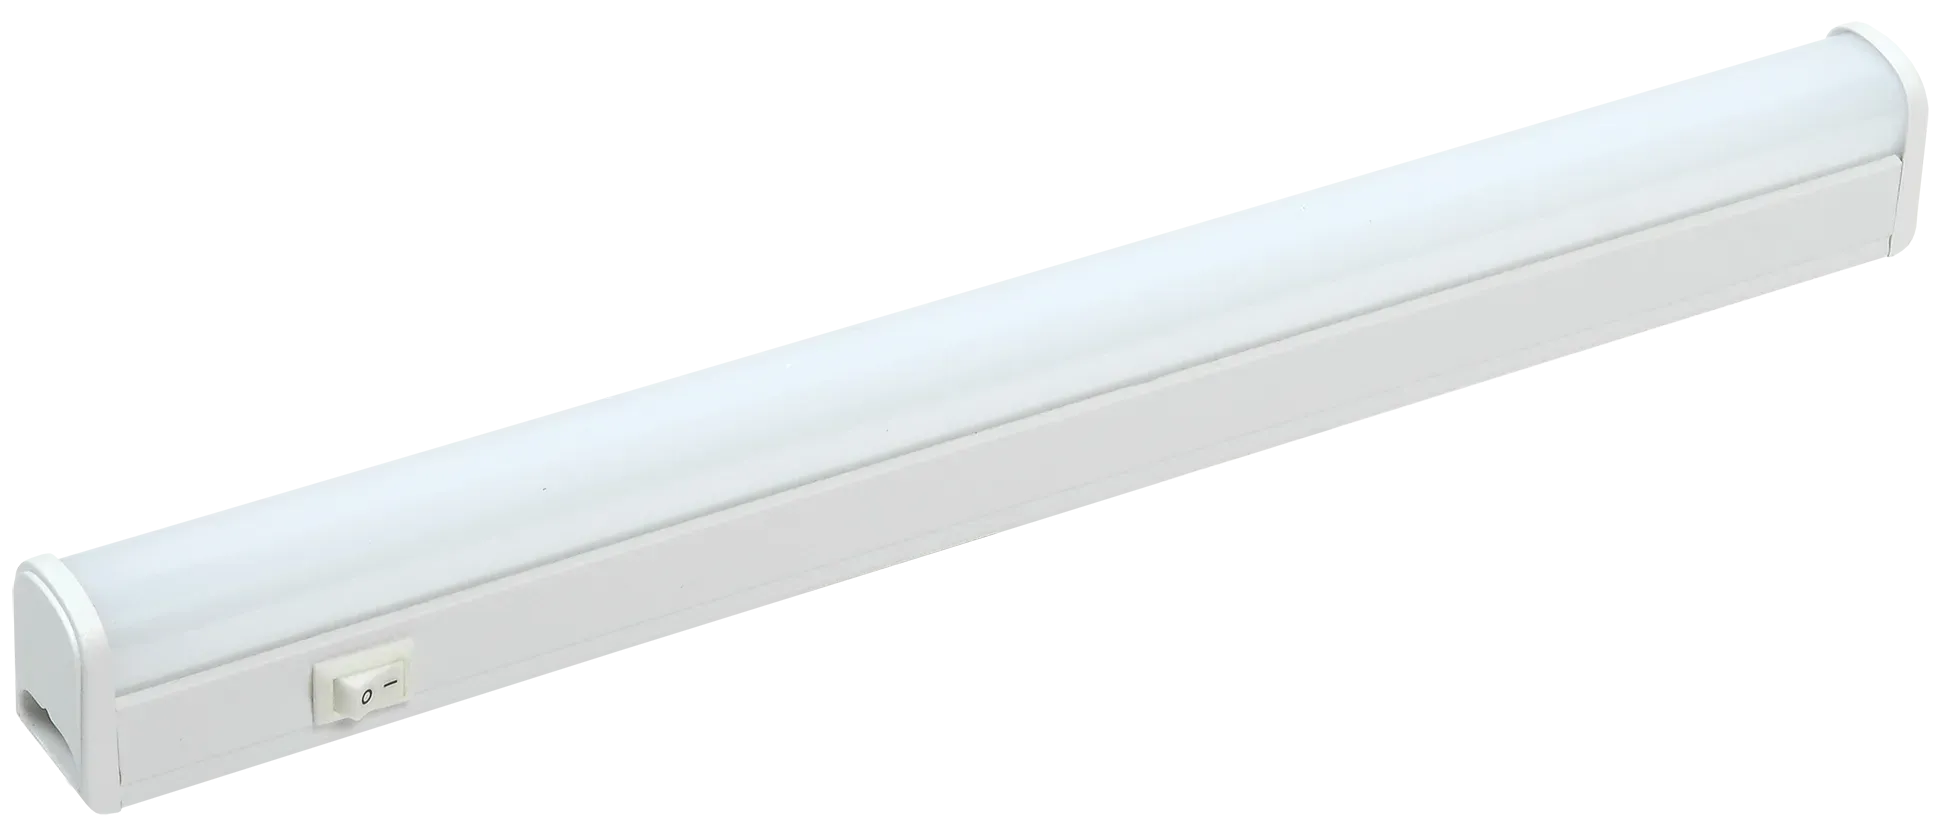 Светильник светодиодный линейный ДБО 3001 4Вт 4000K IP20 311мм пластик IEK